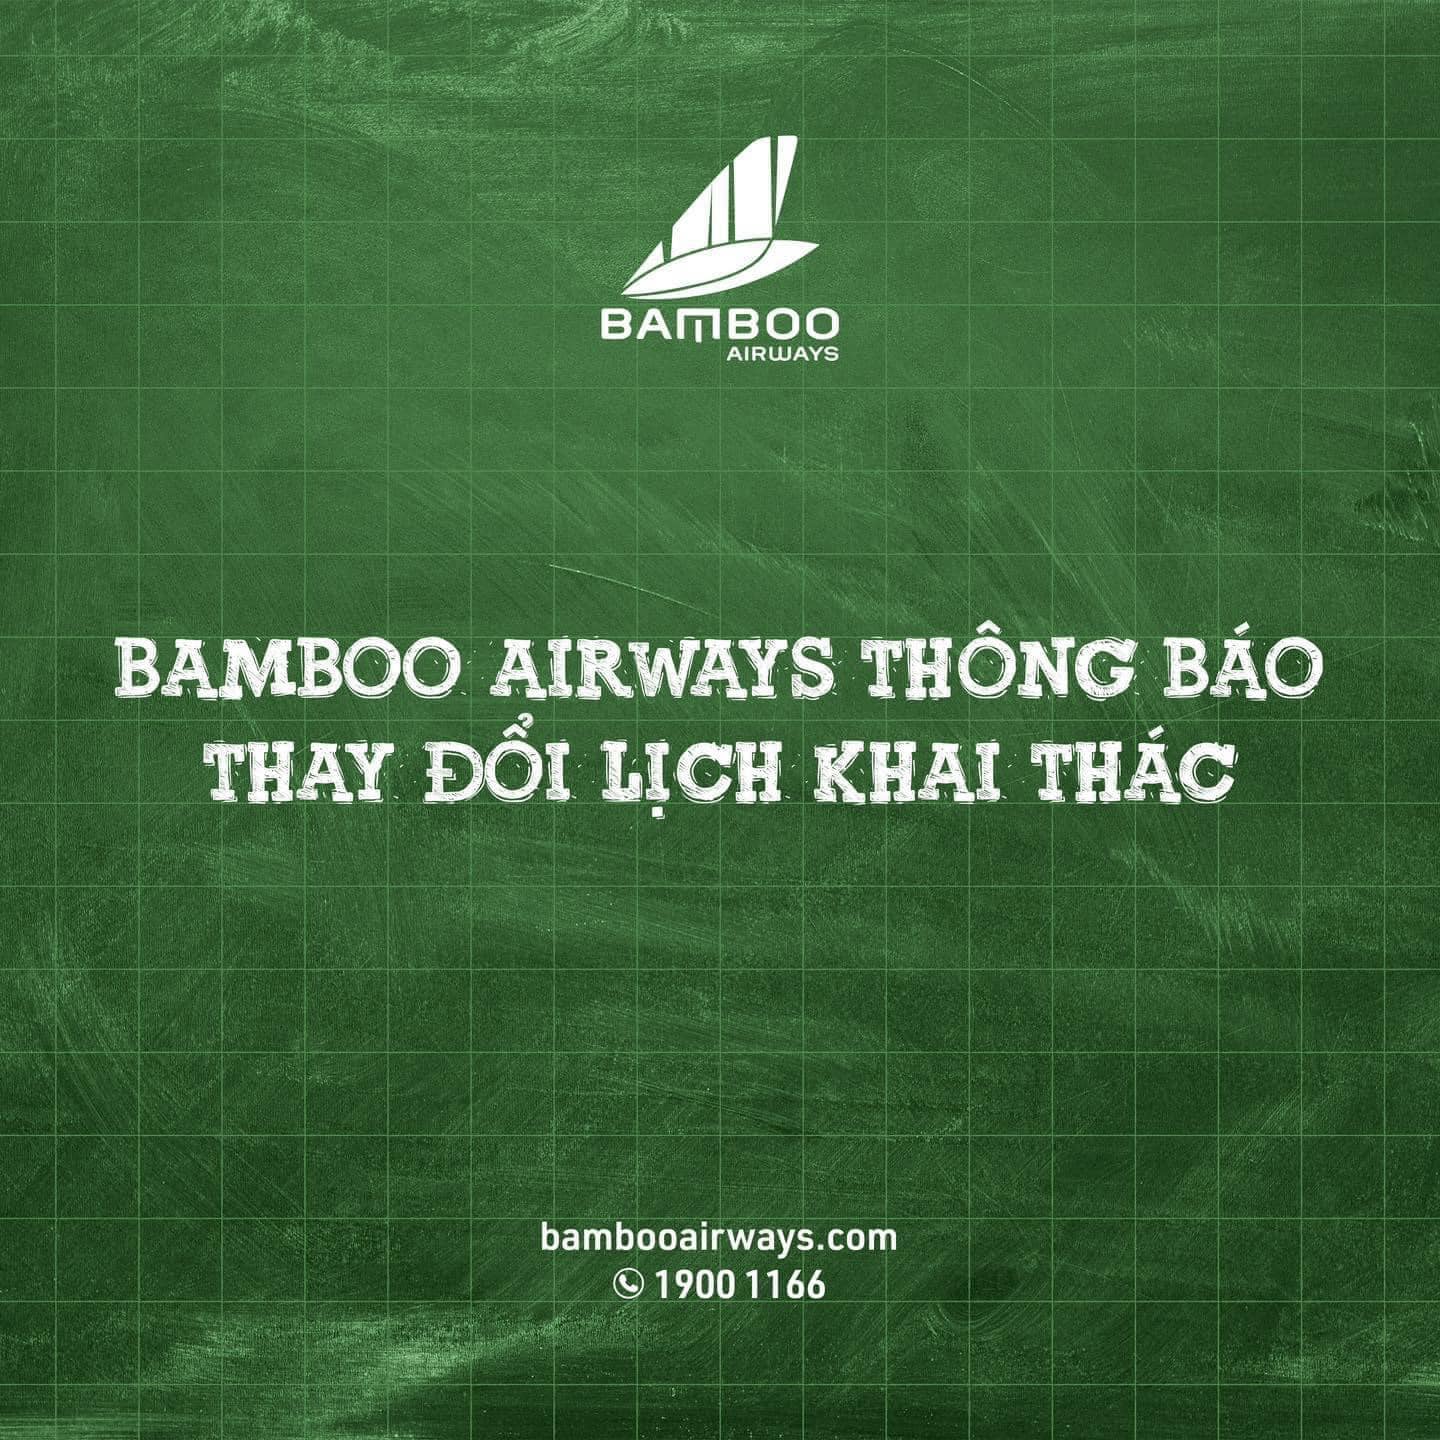 BAMBOO AIRWAYS THAY ĐỔI LỊCH KHAI THÁC DO THỜI TIẾT XẤU Ở ĐỒNG HỚI